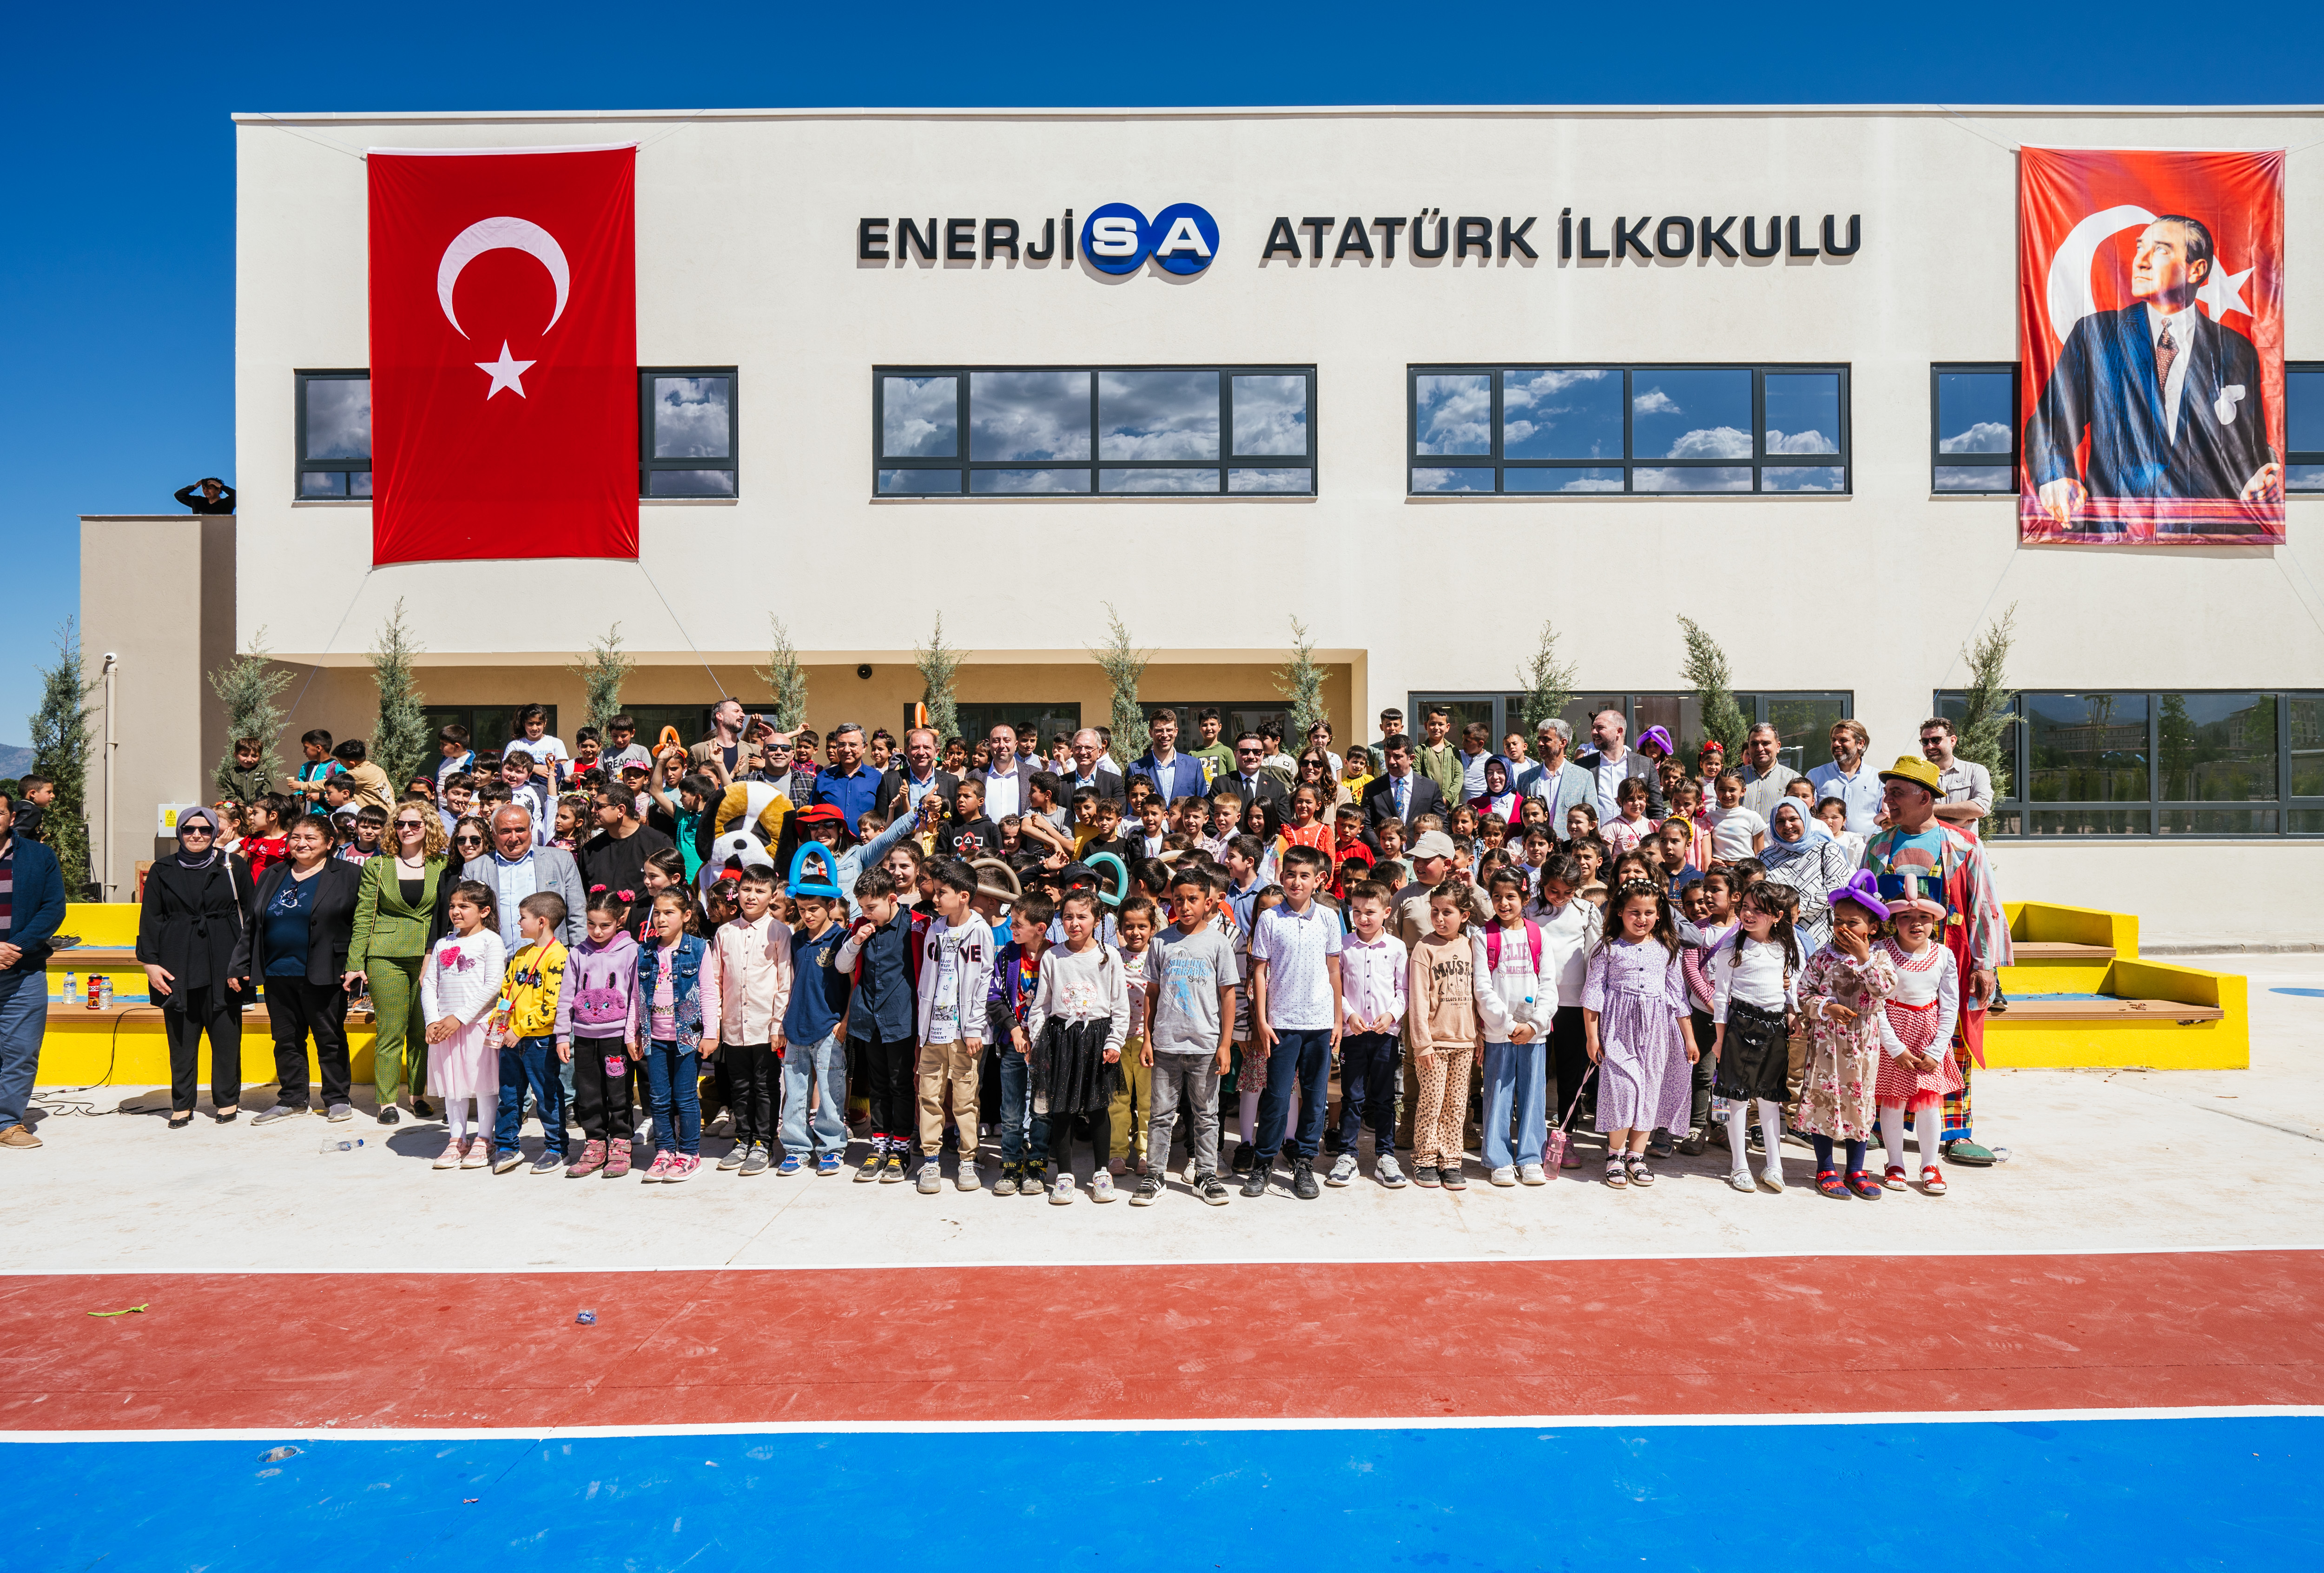 Enerjisa Atatürk İlkokulu Hatay’da açıldı